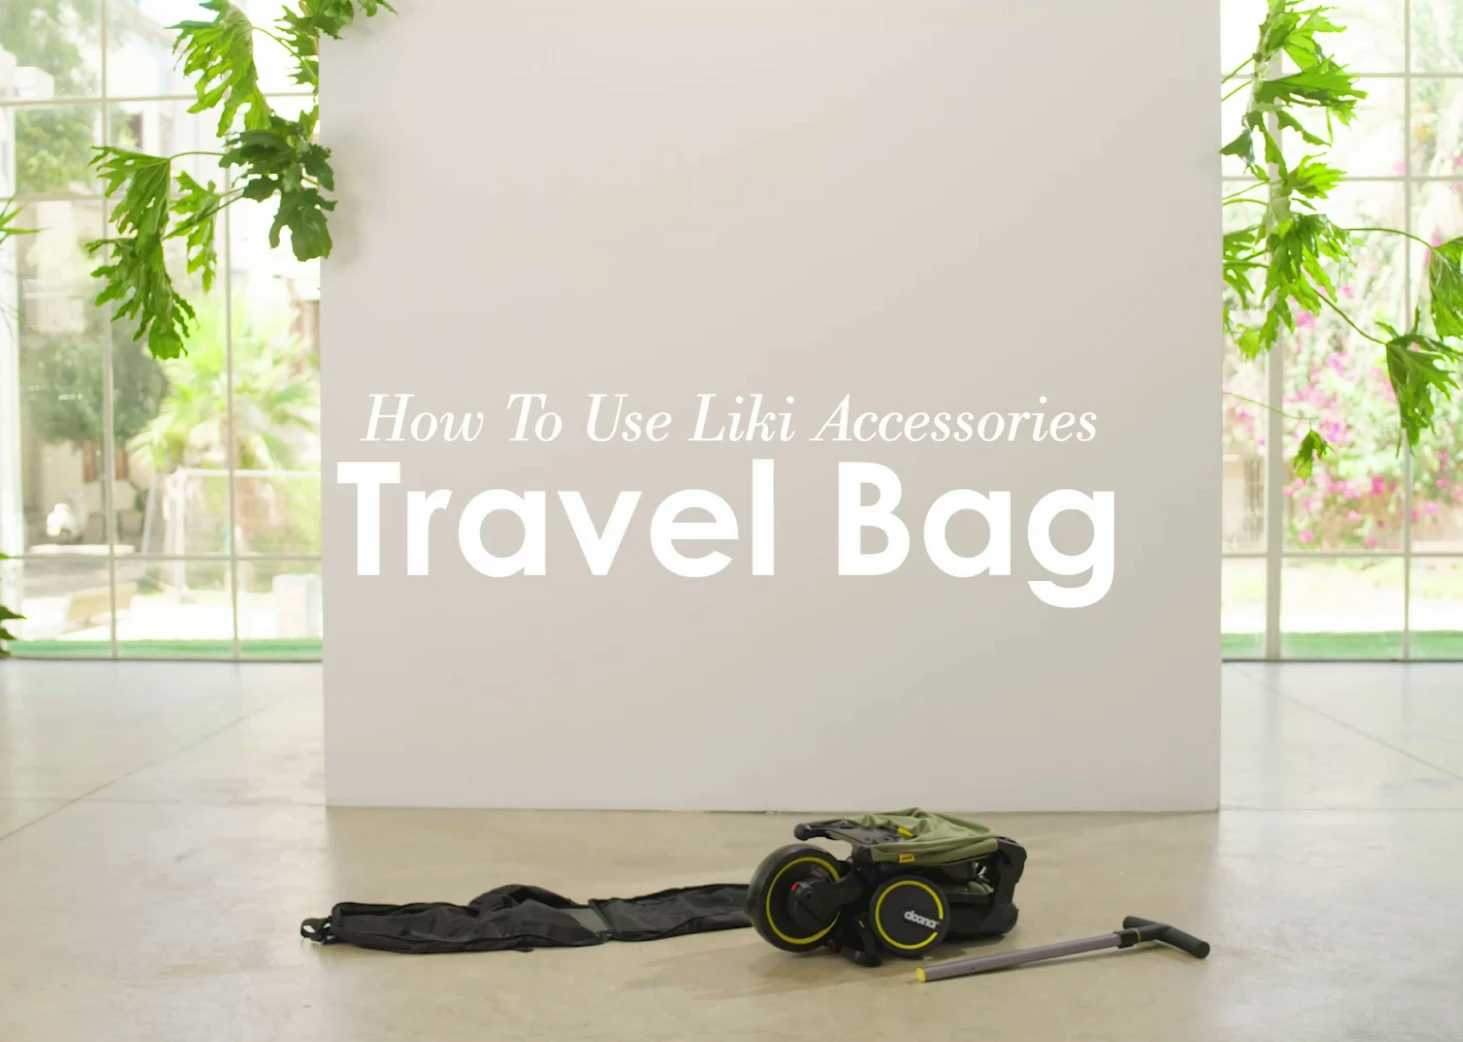  Liki Travel bag